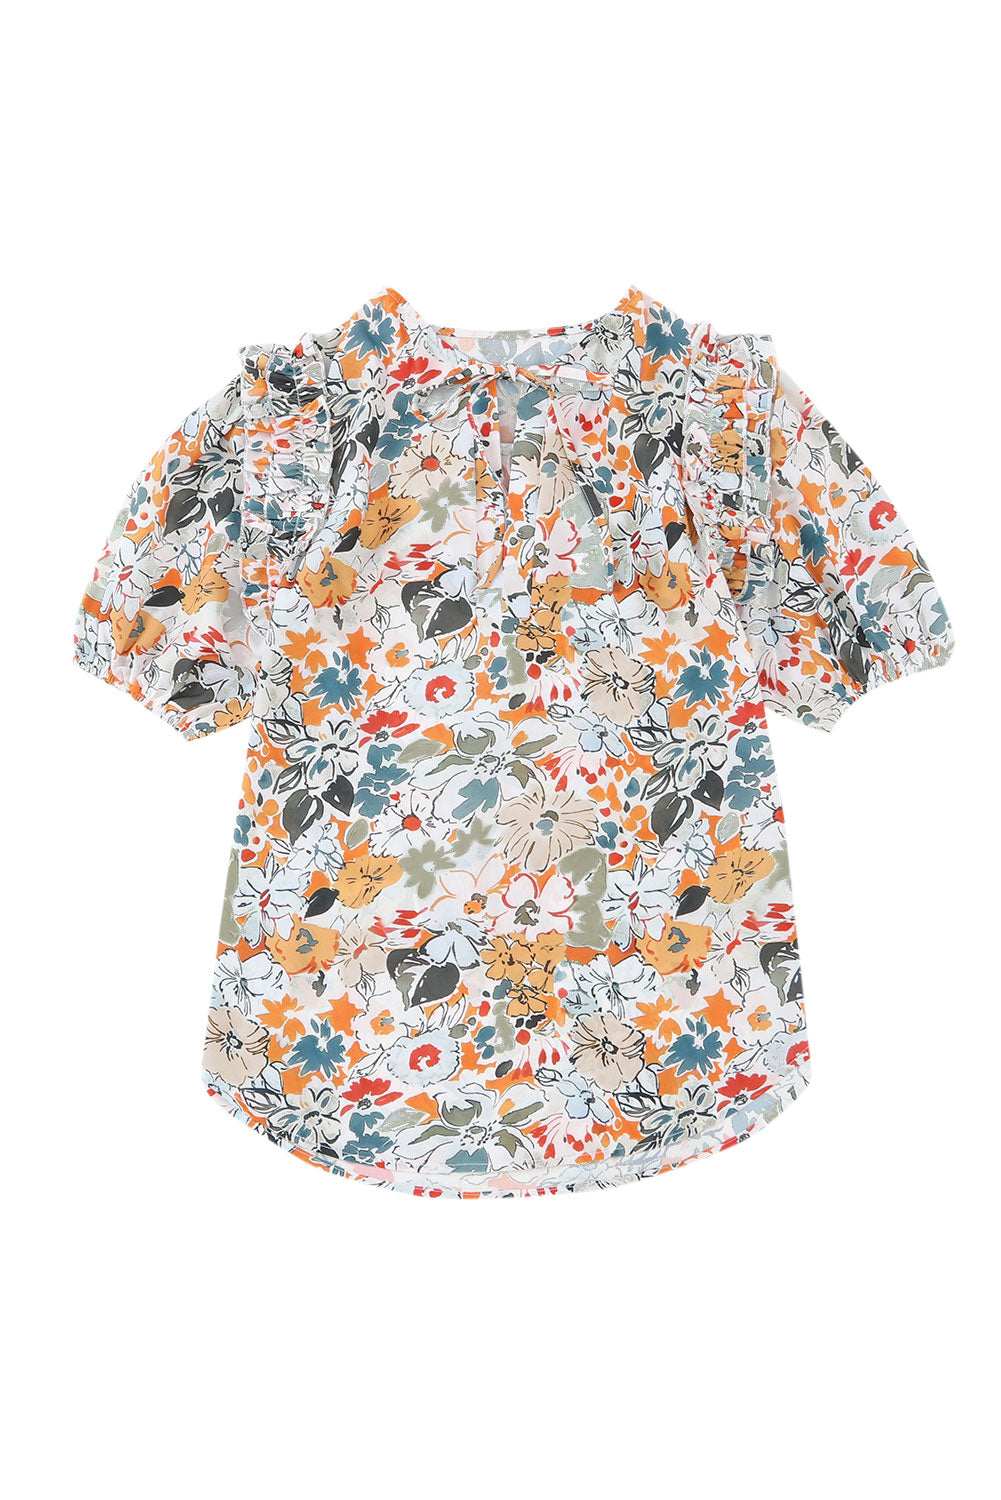 Mehrfarbige Bluse mit geteiltem V-Ausschnitt, Puffärmeln und Blumenmuster